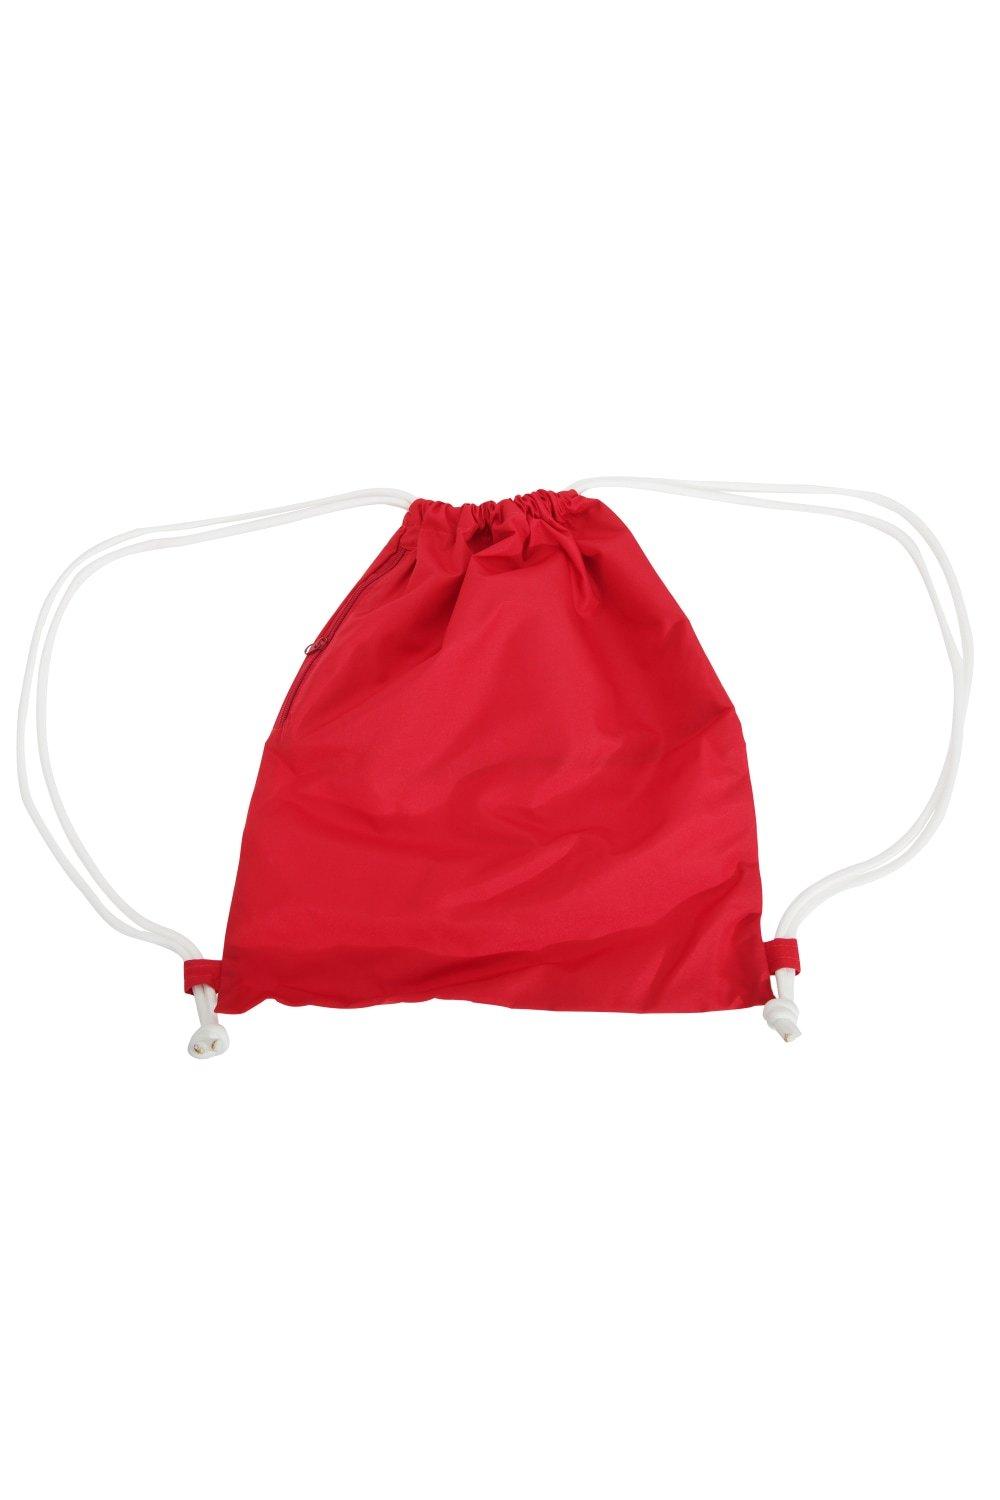 Сумка Icon на шнурке / Gymsac Bagbase, красный сумка urban gymsac на шнурке sol s фиолетовый